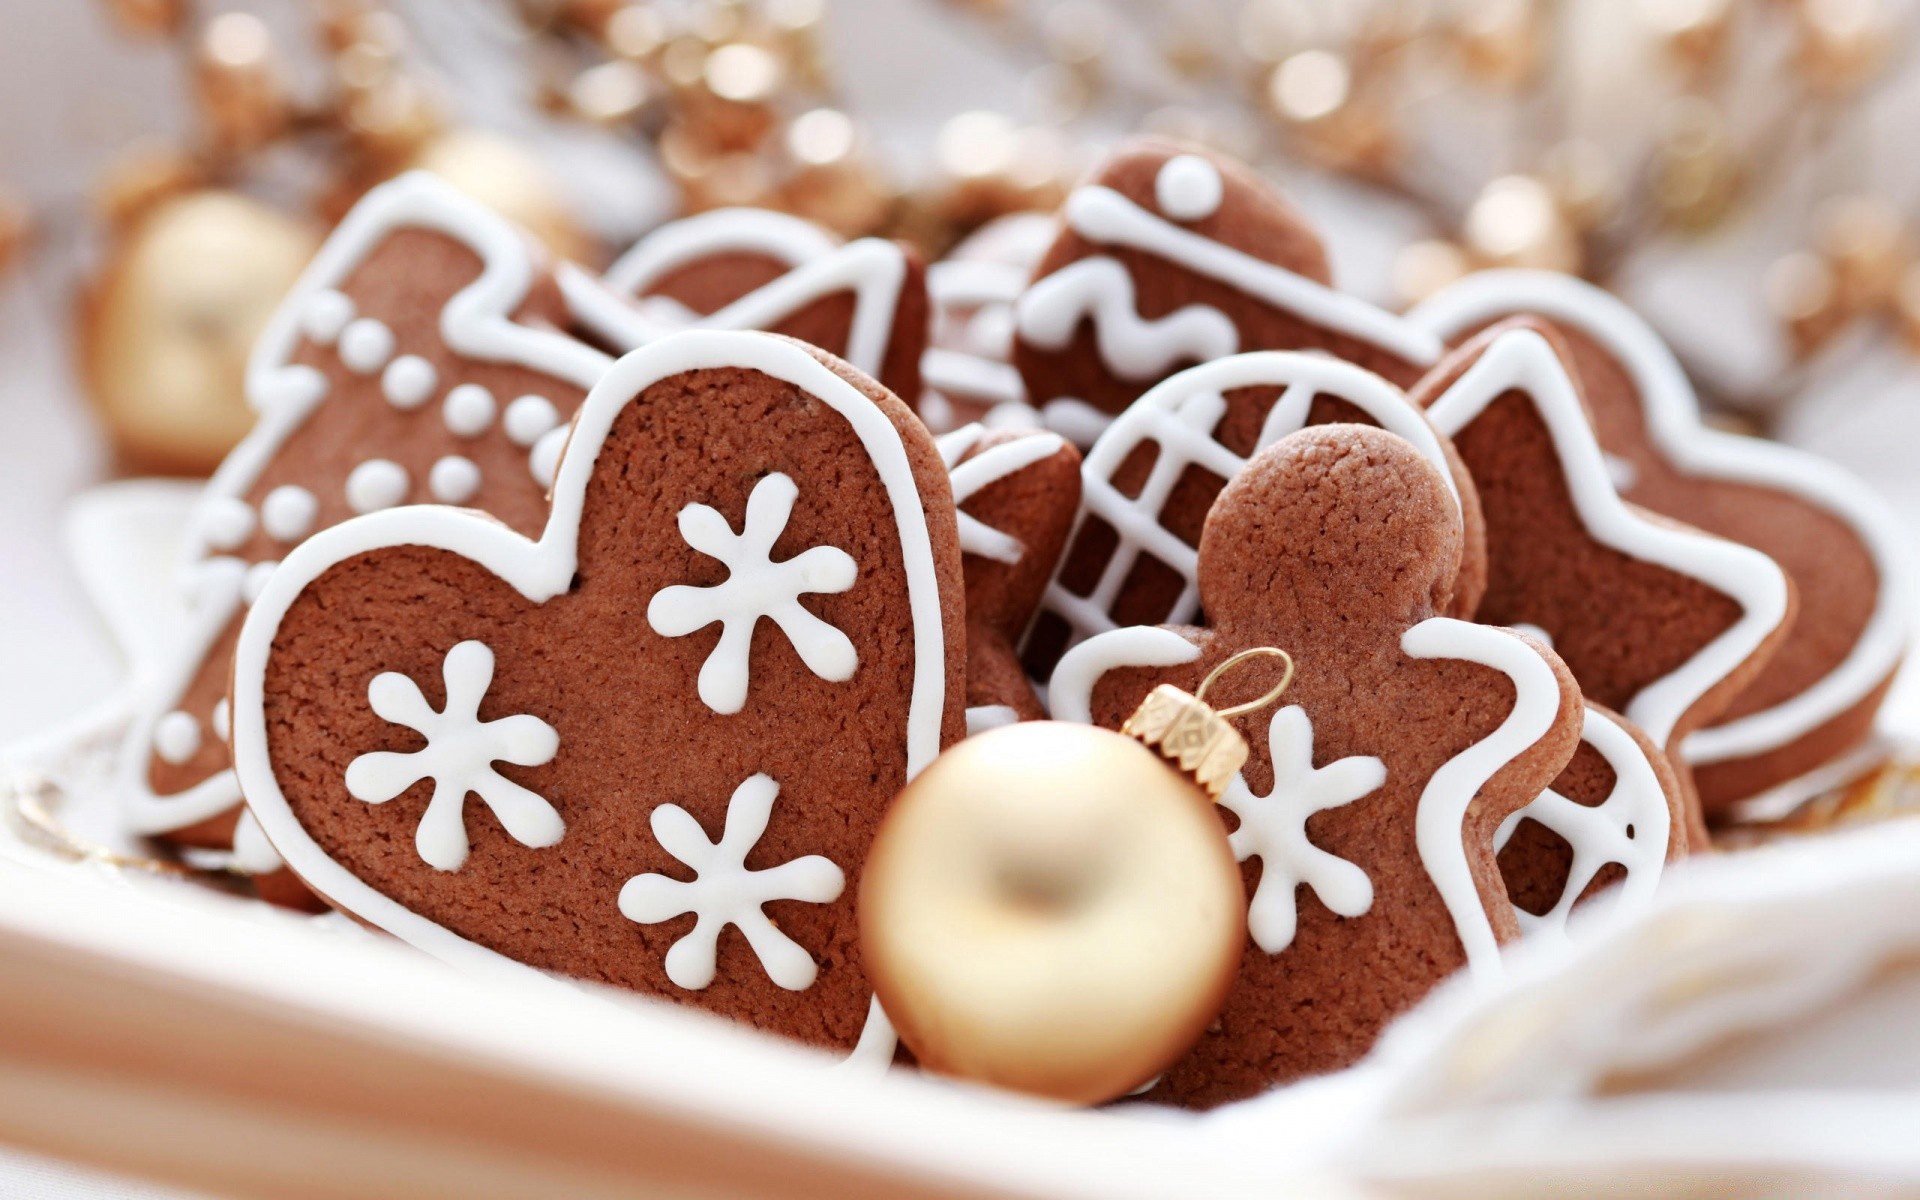 новый год еда шоколад сахар конфеты сладкий печенье вкусные традиционные кондитерское изделие рождество колобок домашние торт праздник украшения гуди выпечки хлебопекарни кондитерский